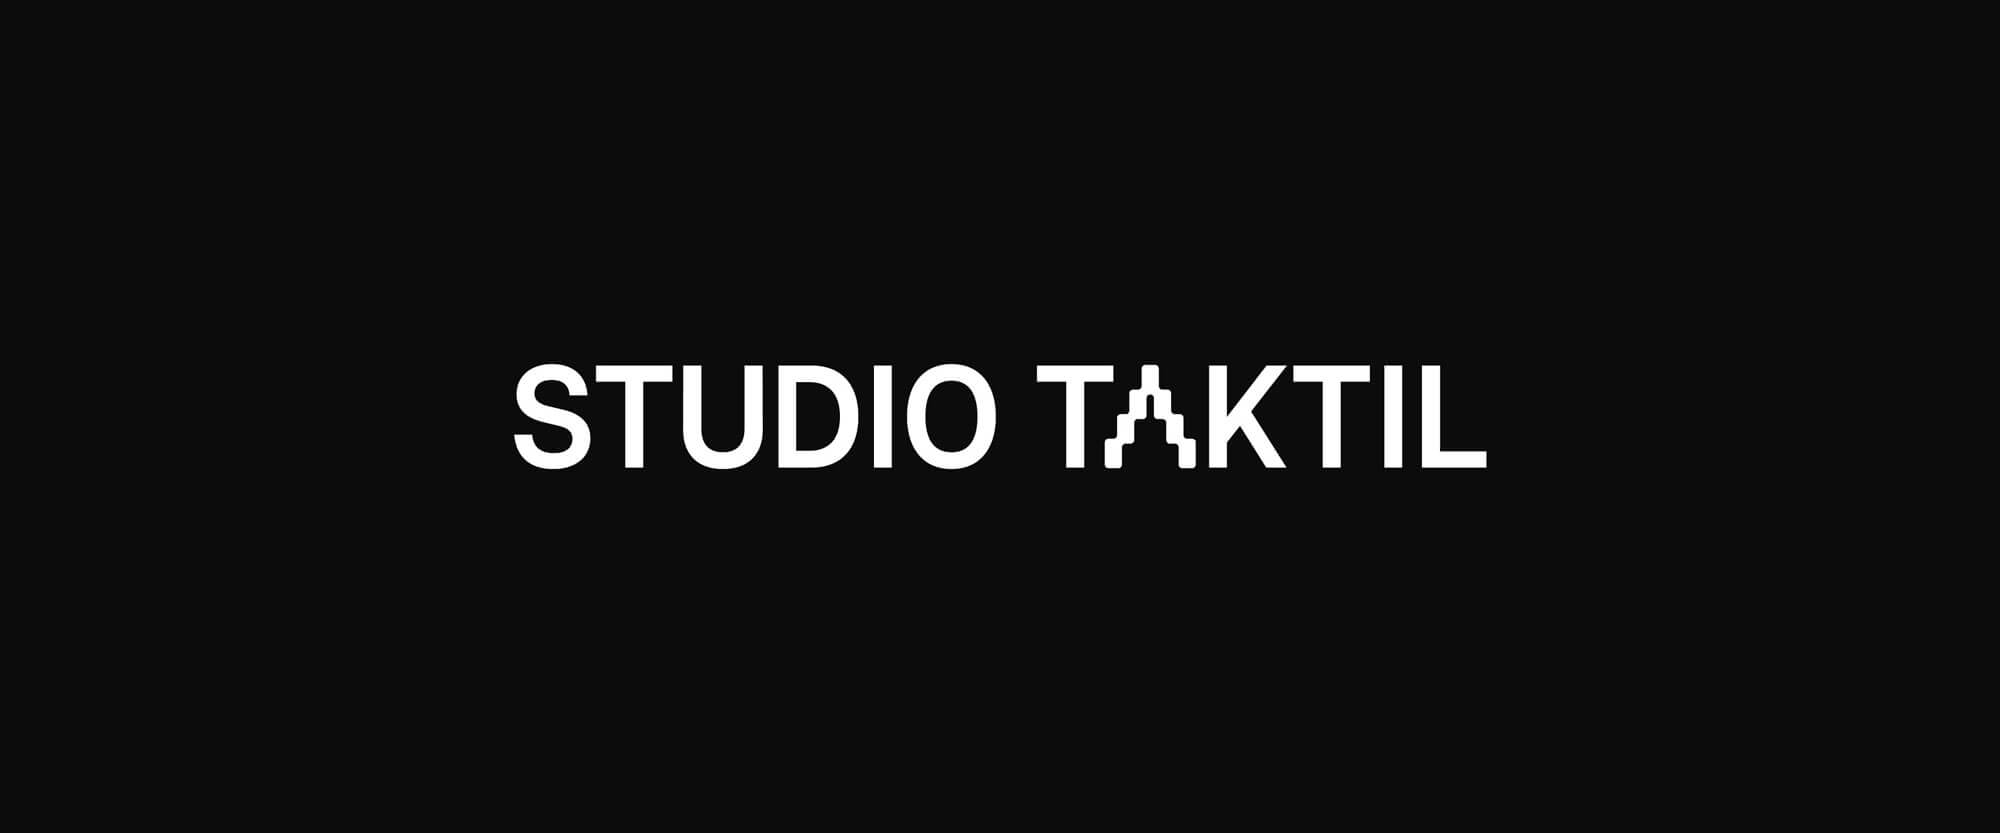 taktil_logo